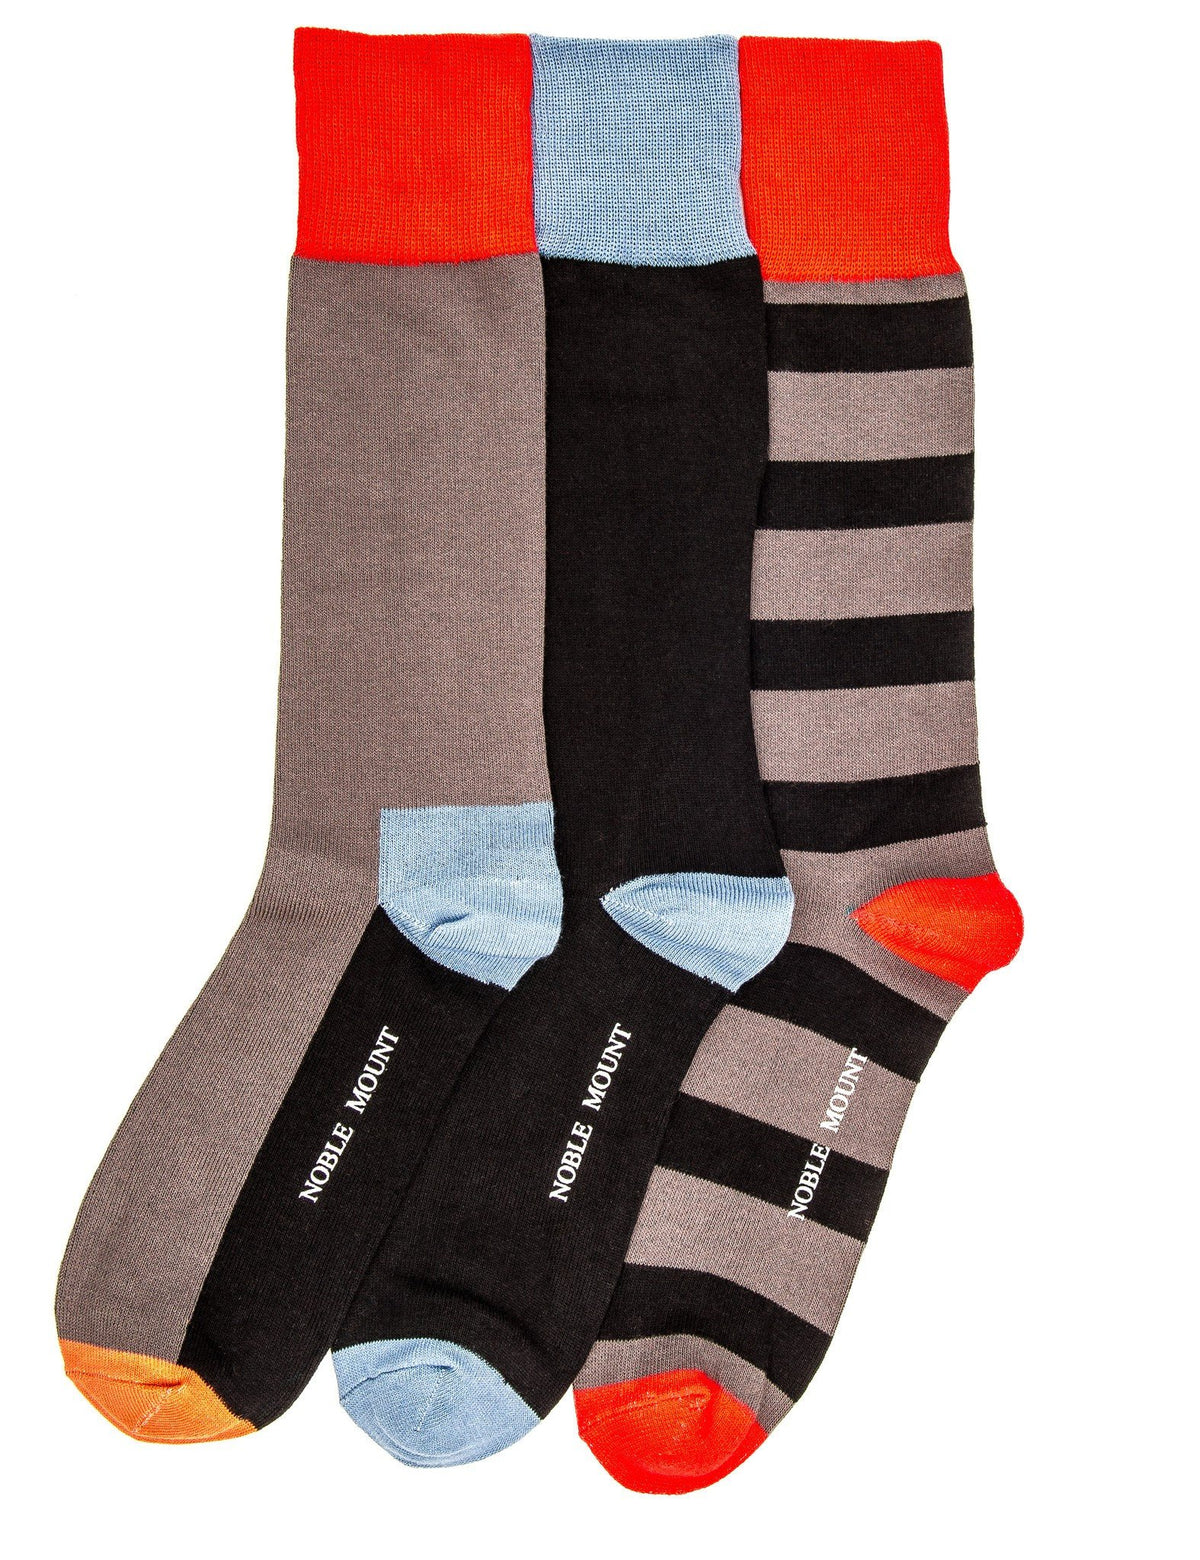 Men's Combed Cotton Dress Socks 3-Pack - Set 3